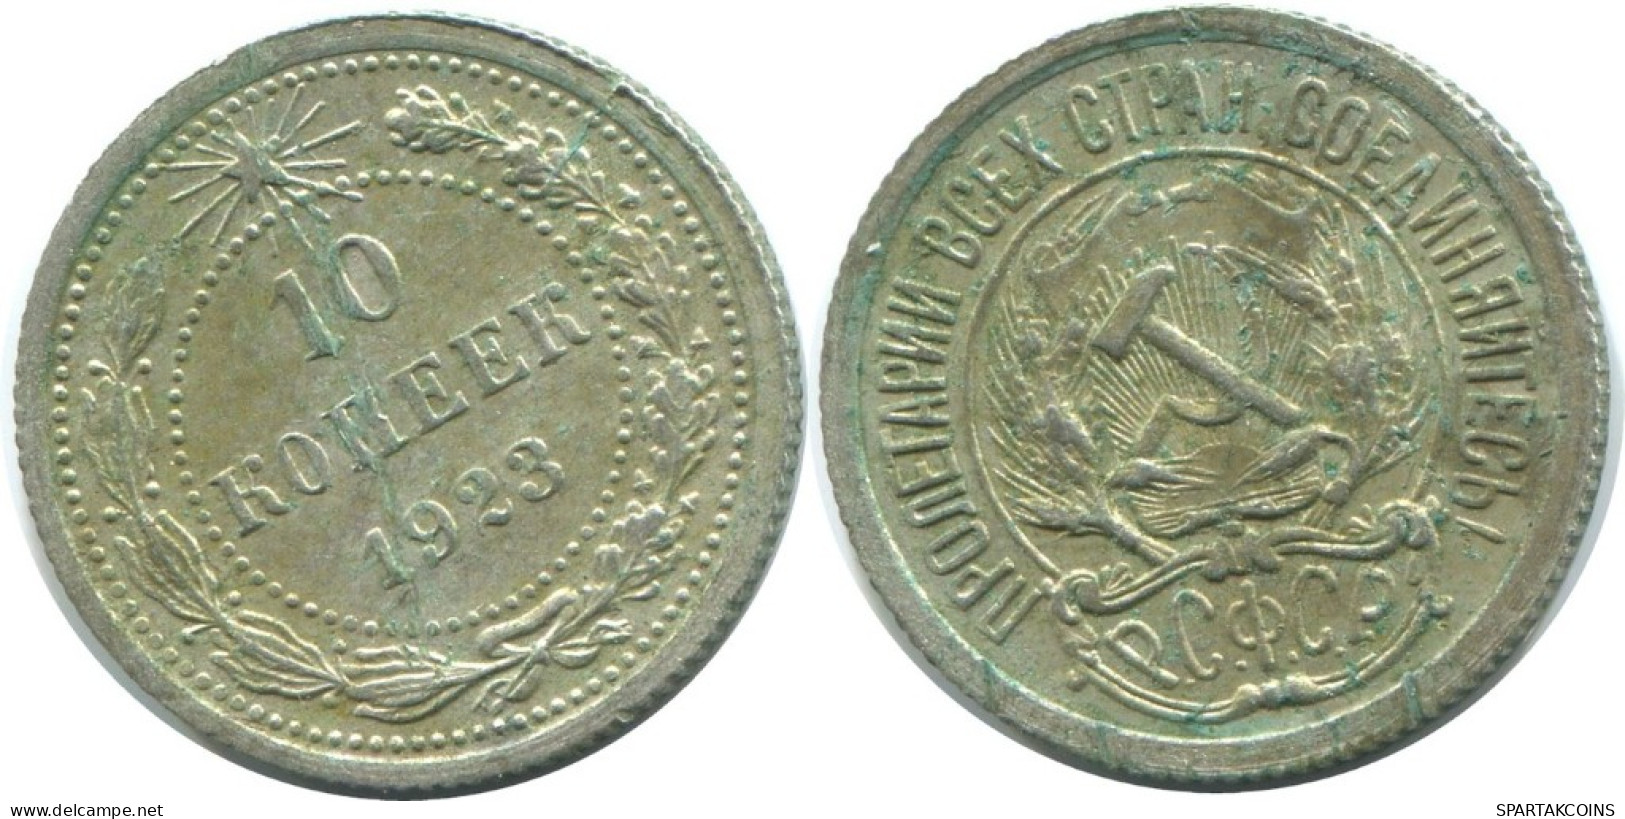 10 KOPEKS 1923 RUSSLAND RUSSIA RSFSR SILBER Münze HIGH GRADE #AE953.4.D.A - Russland